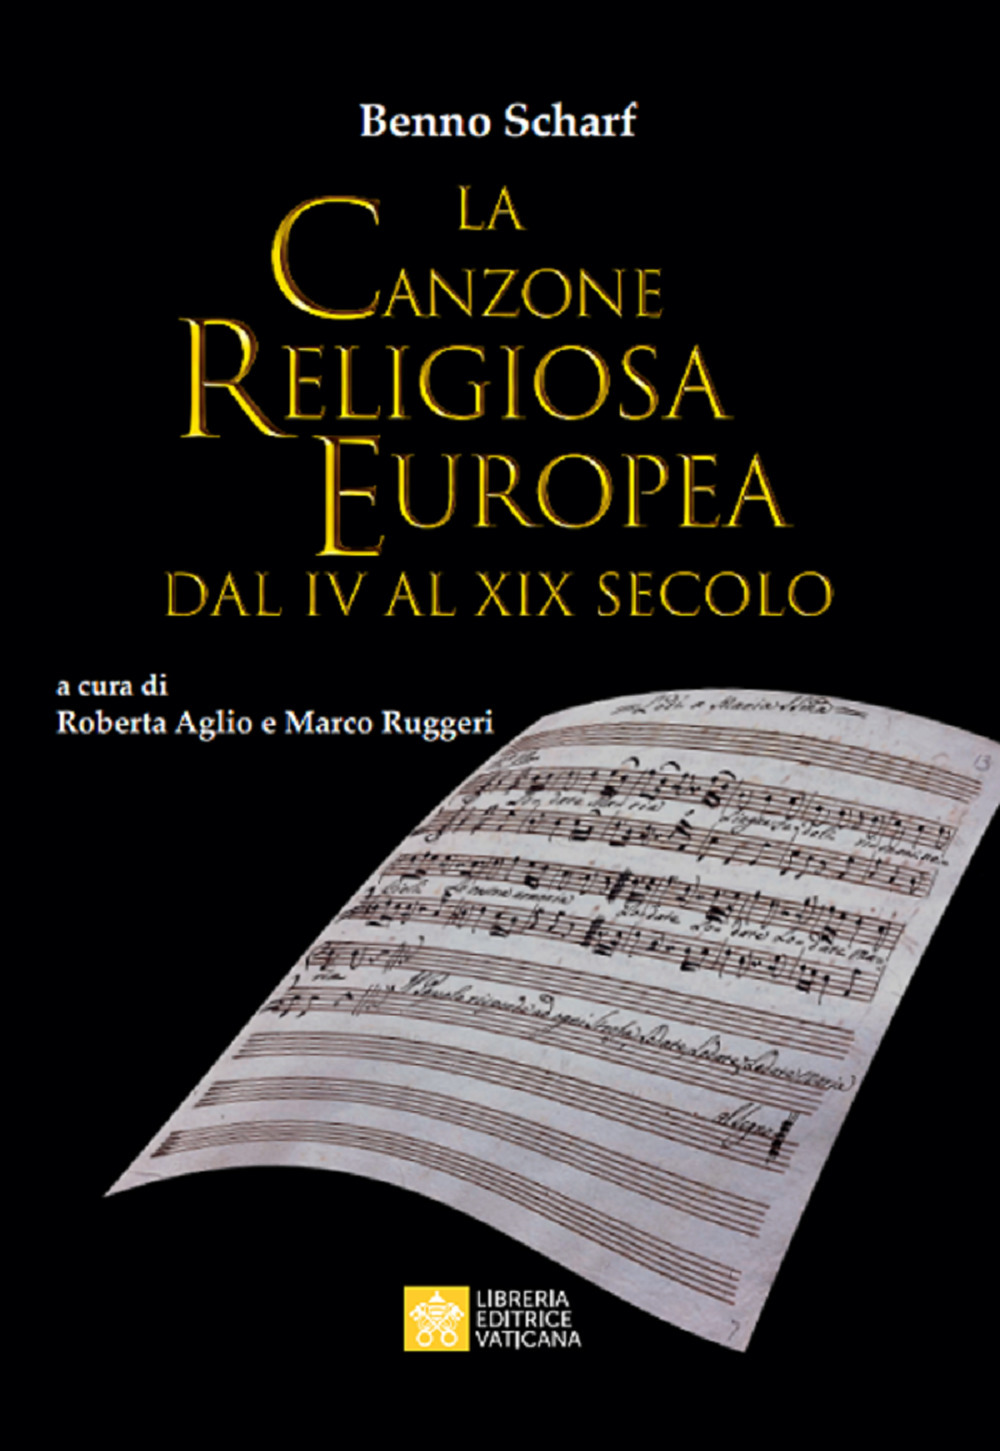 Image of La canzone religiosa europea dal IV al XIX Secolo